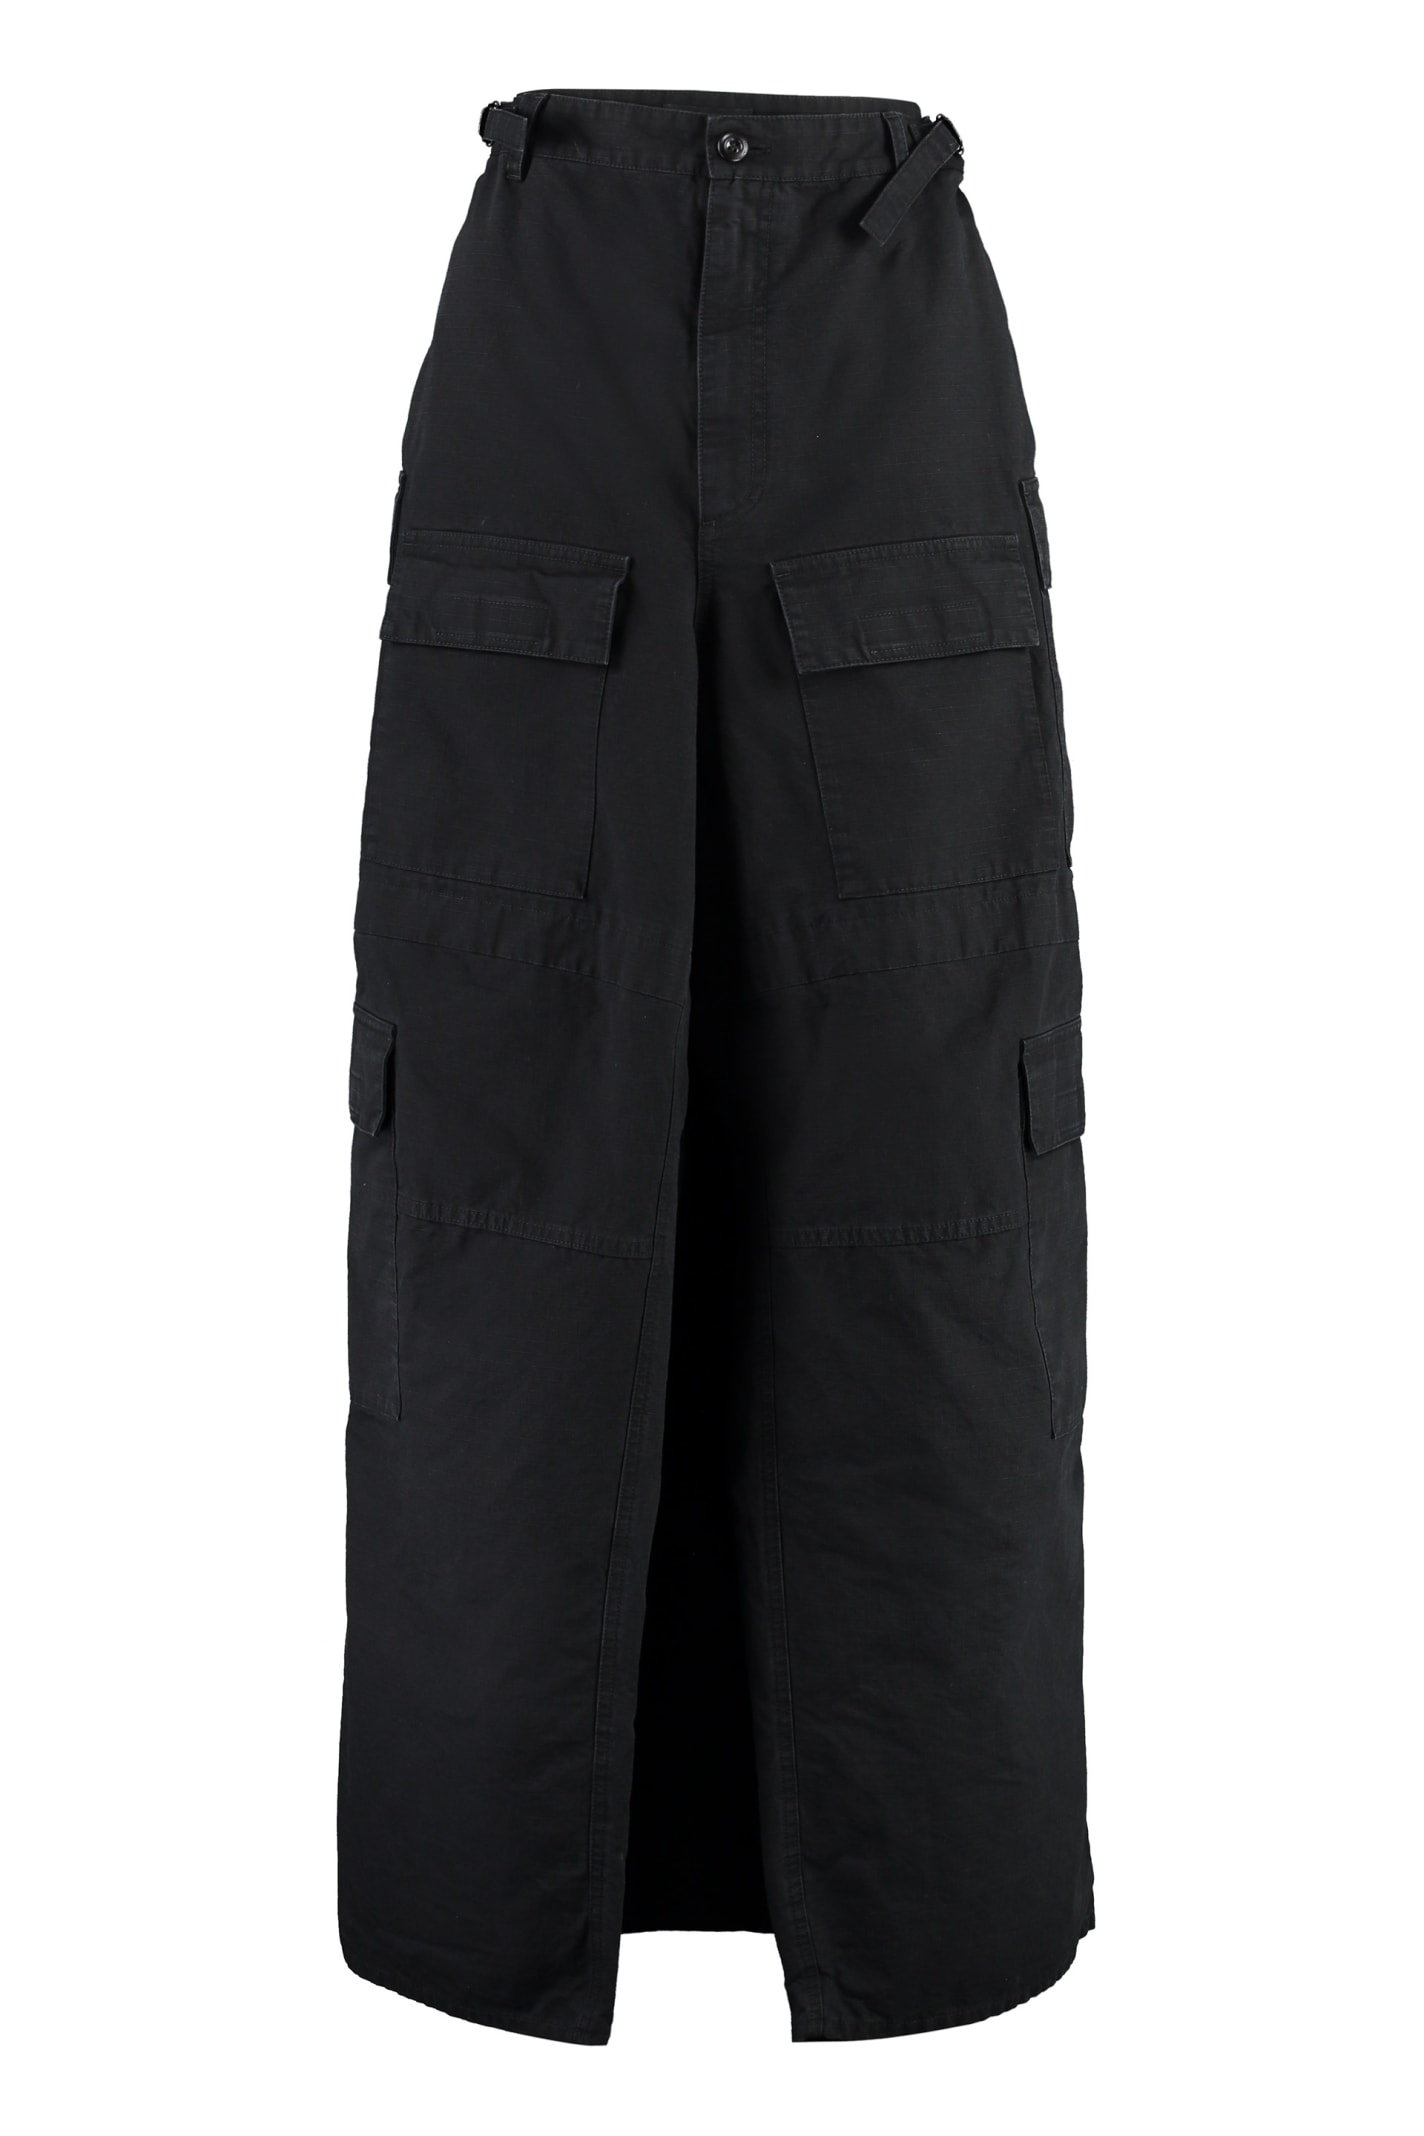 Shop Balenciaga Multi-pockets Skirt Pants